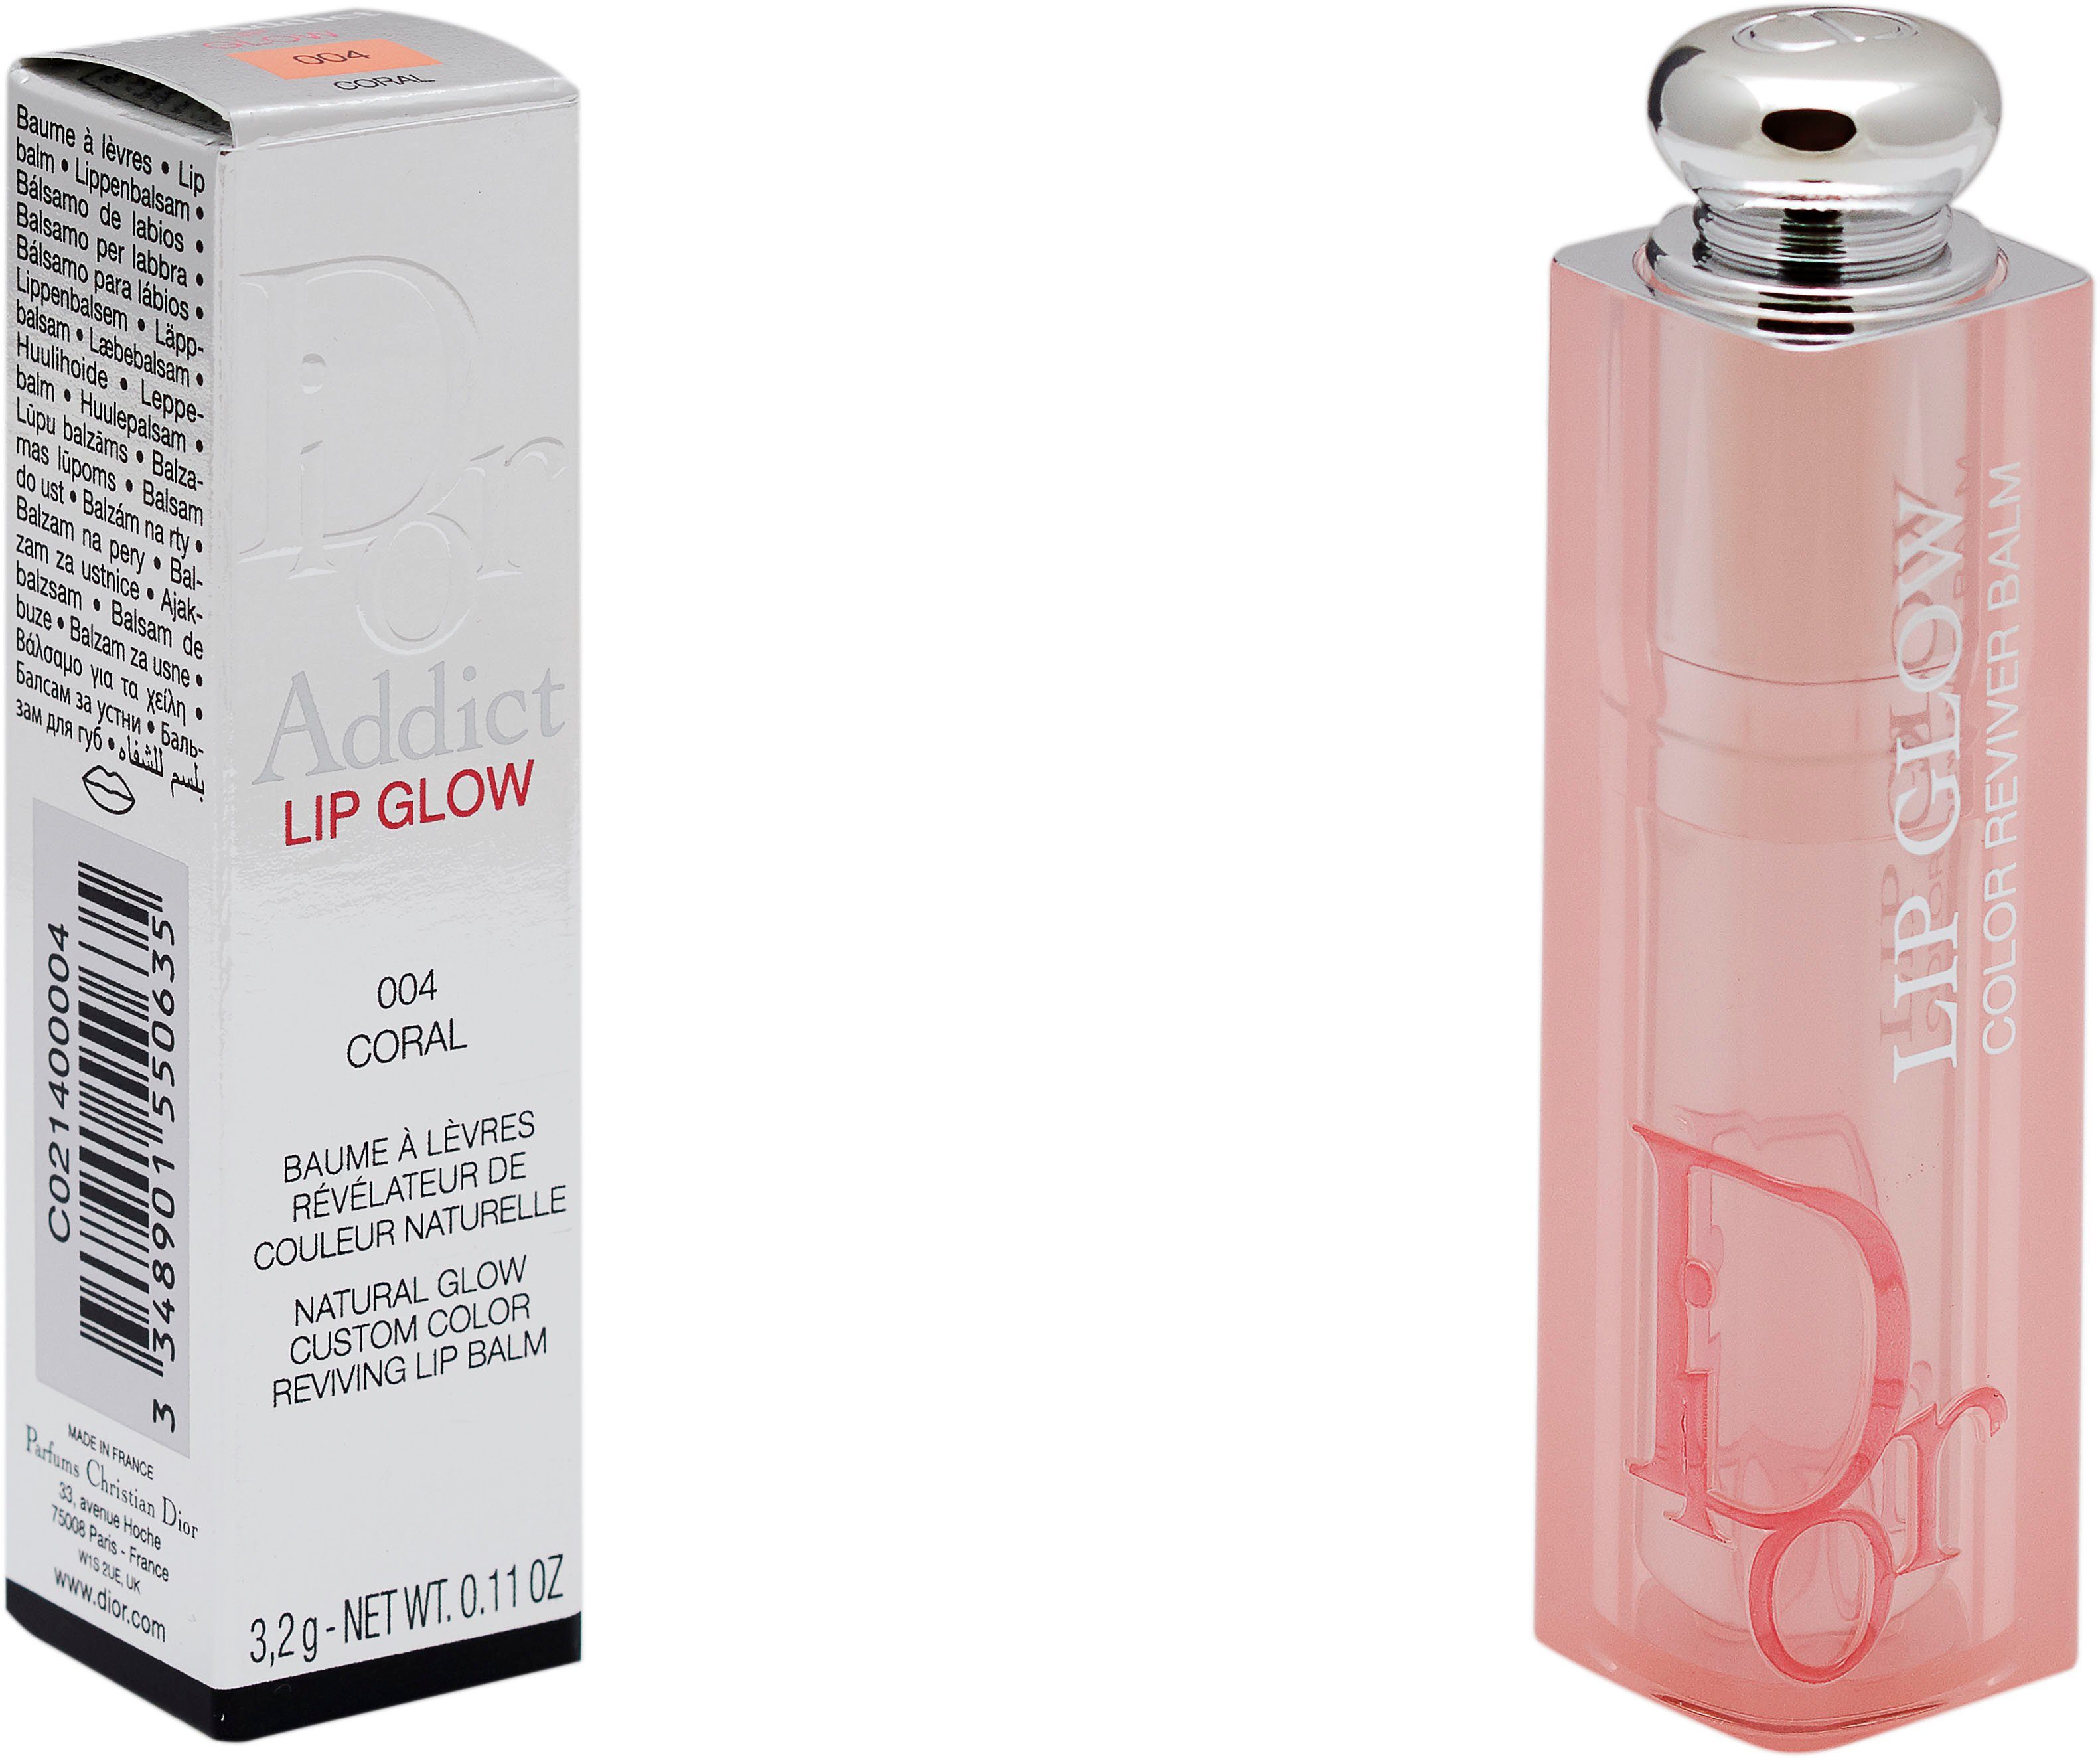 Dior Lippenbalsam Dior 004 Addict Glow Coral Lip